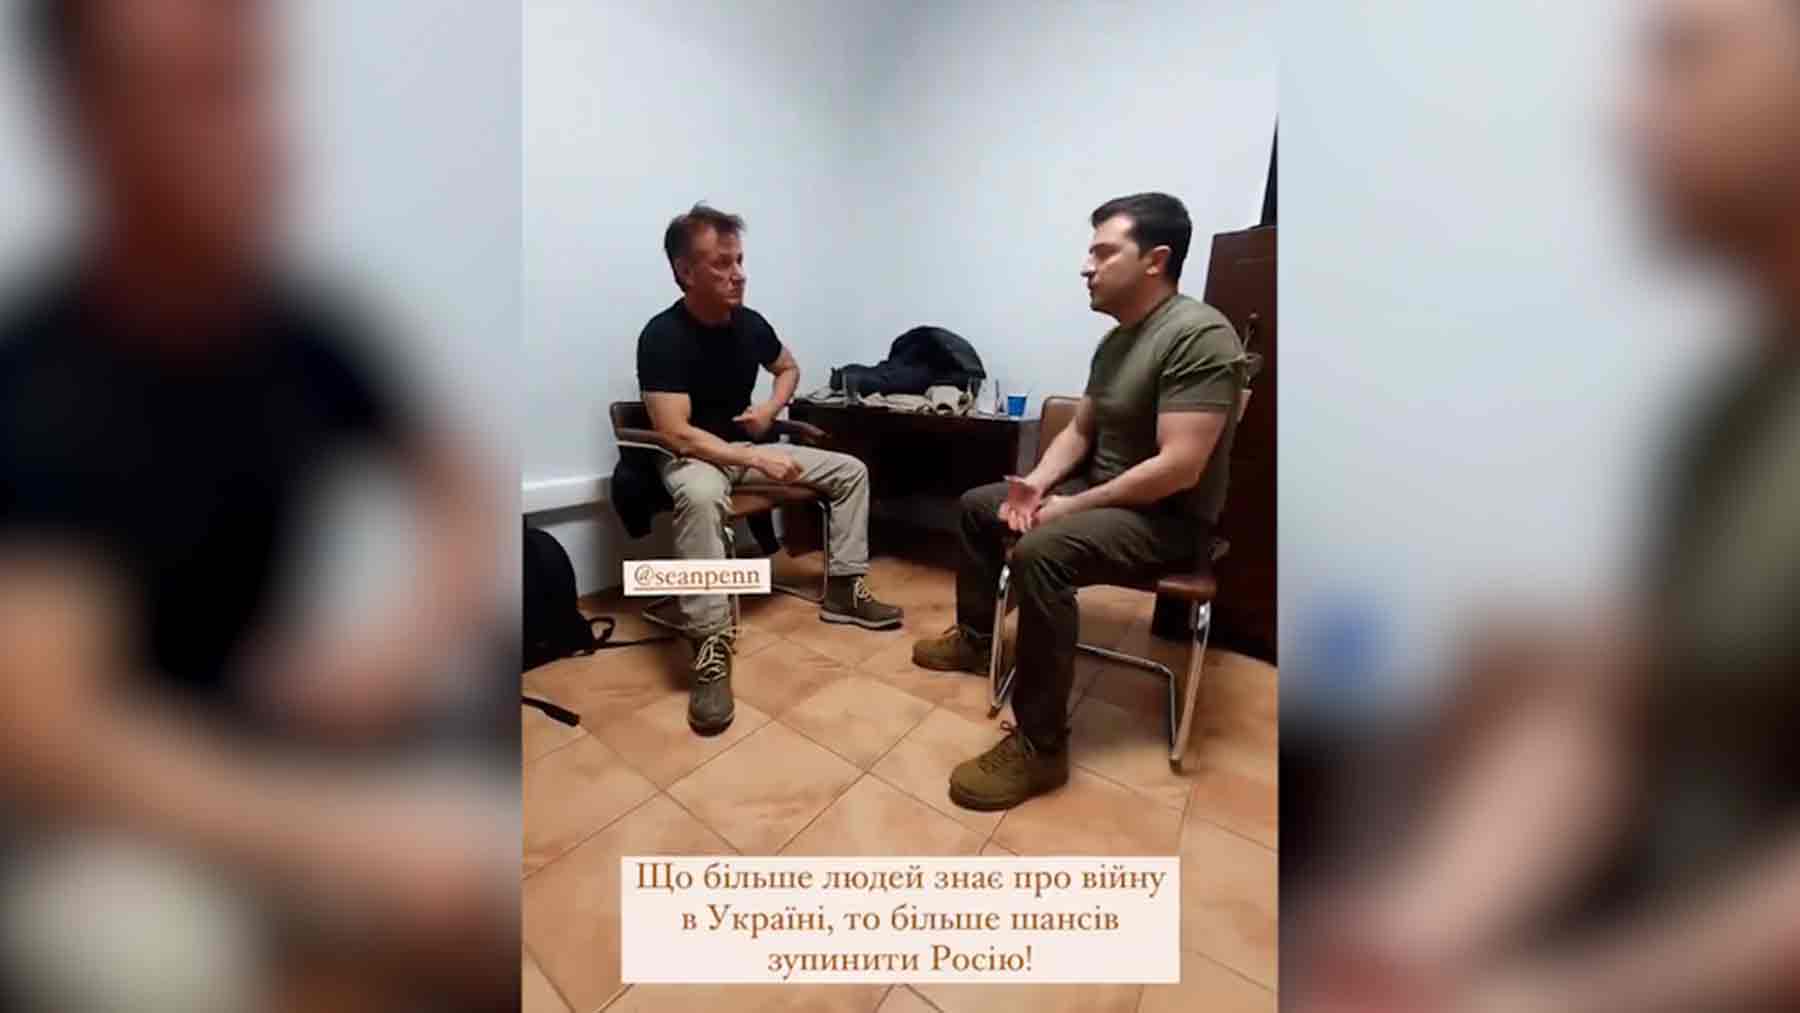 El presidente de Ucrania se reúne con el actor Sean Penn en plena invasión